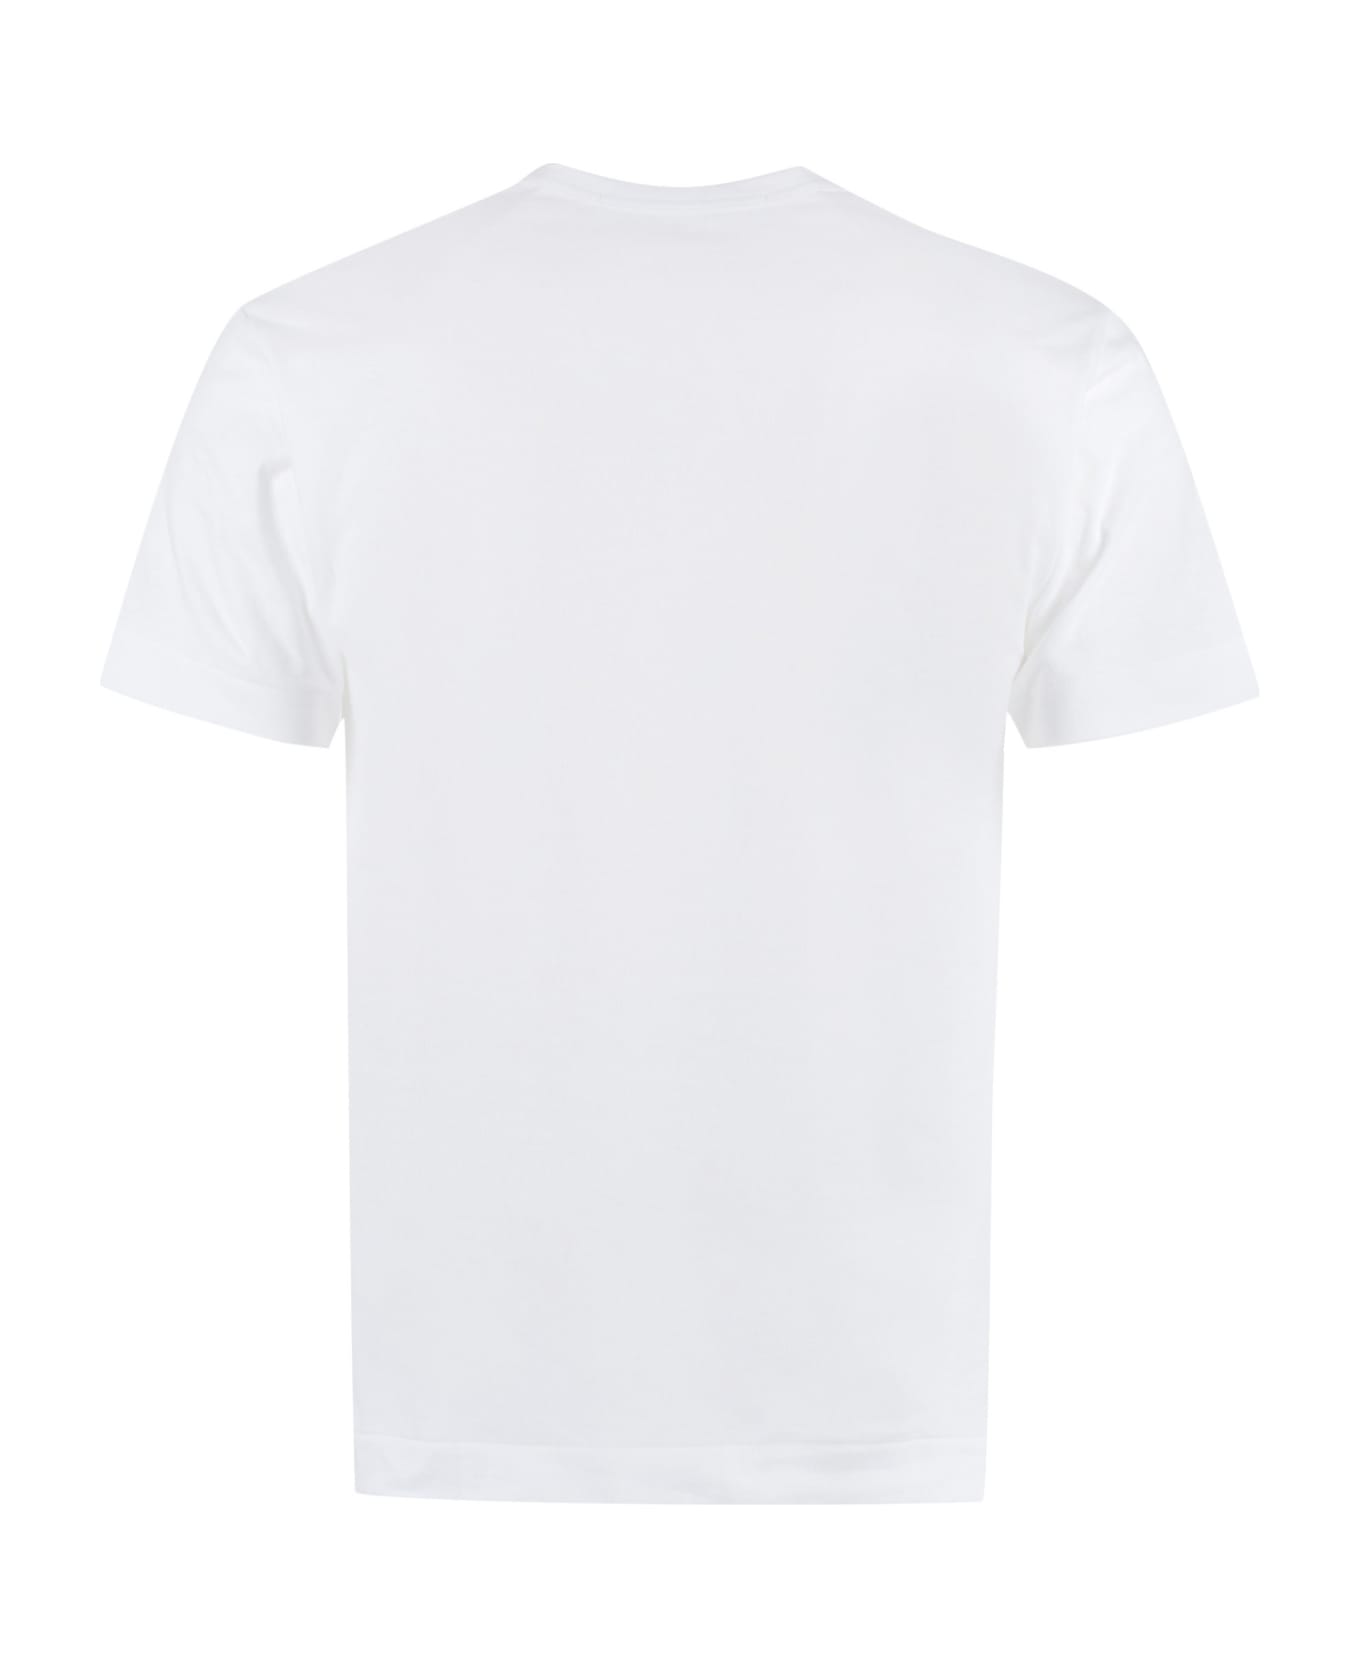 Comme des Garçons Play Cotton Crew-neck T-shirt - White